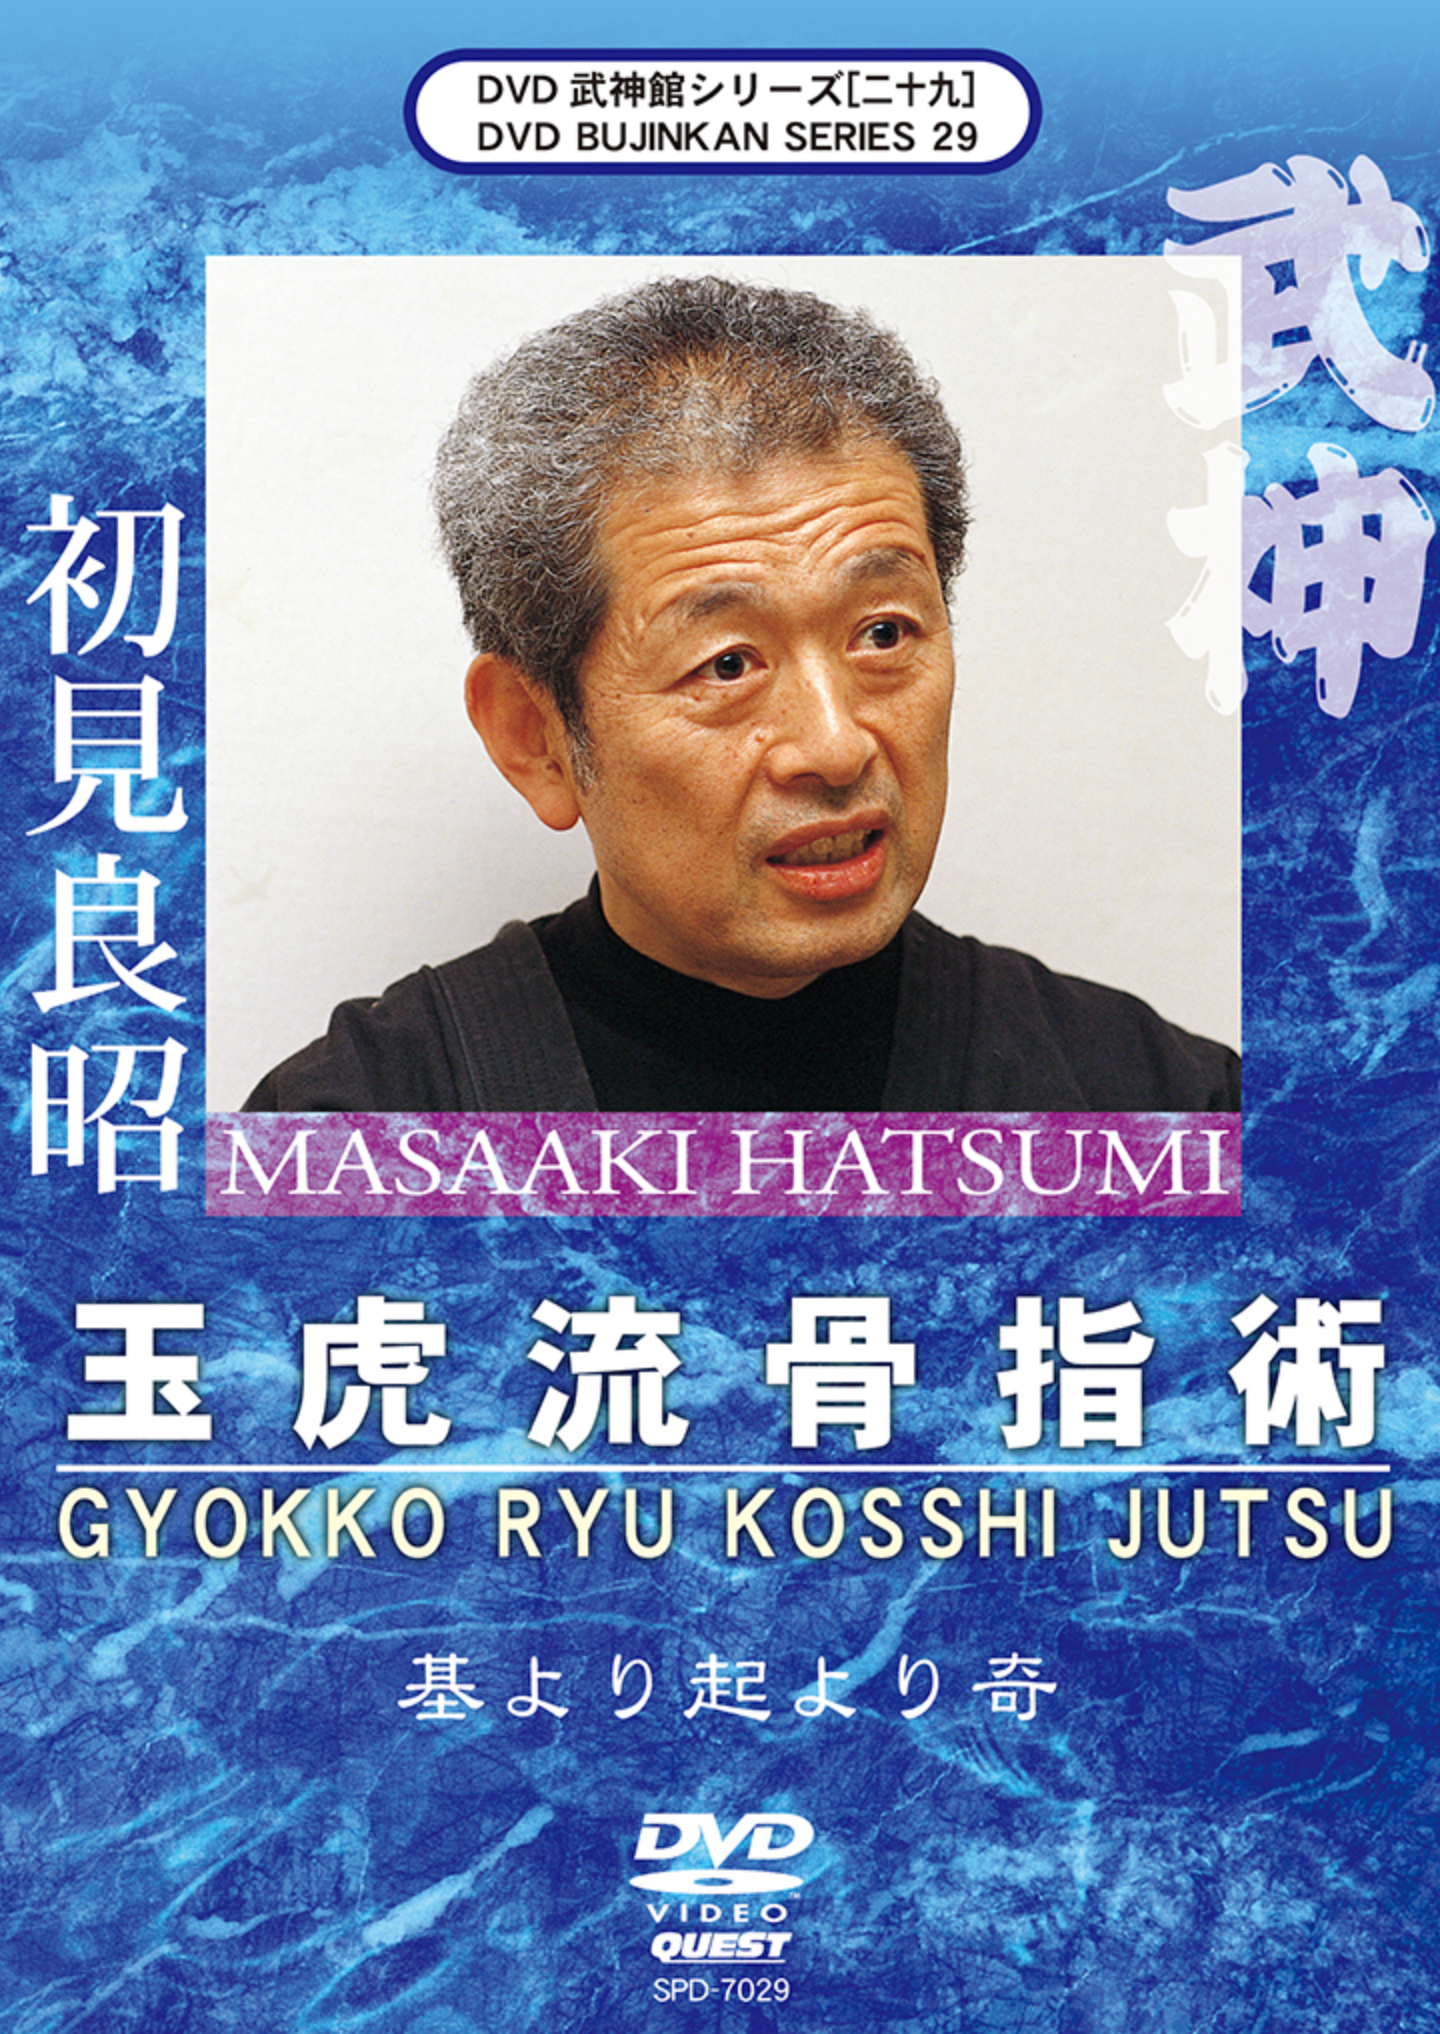 Bujinkan DVD Series 29: Gyokko Ryu Koshi Jutsu with Masaaki Hatsumi - Budovideos Inc